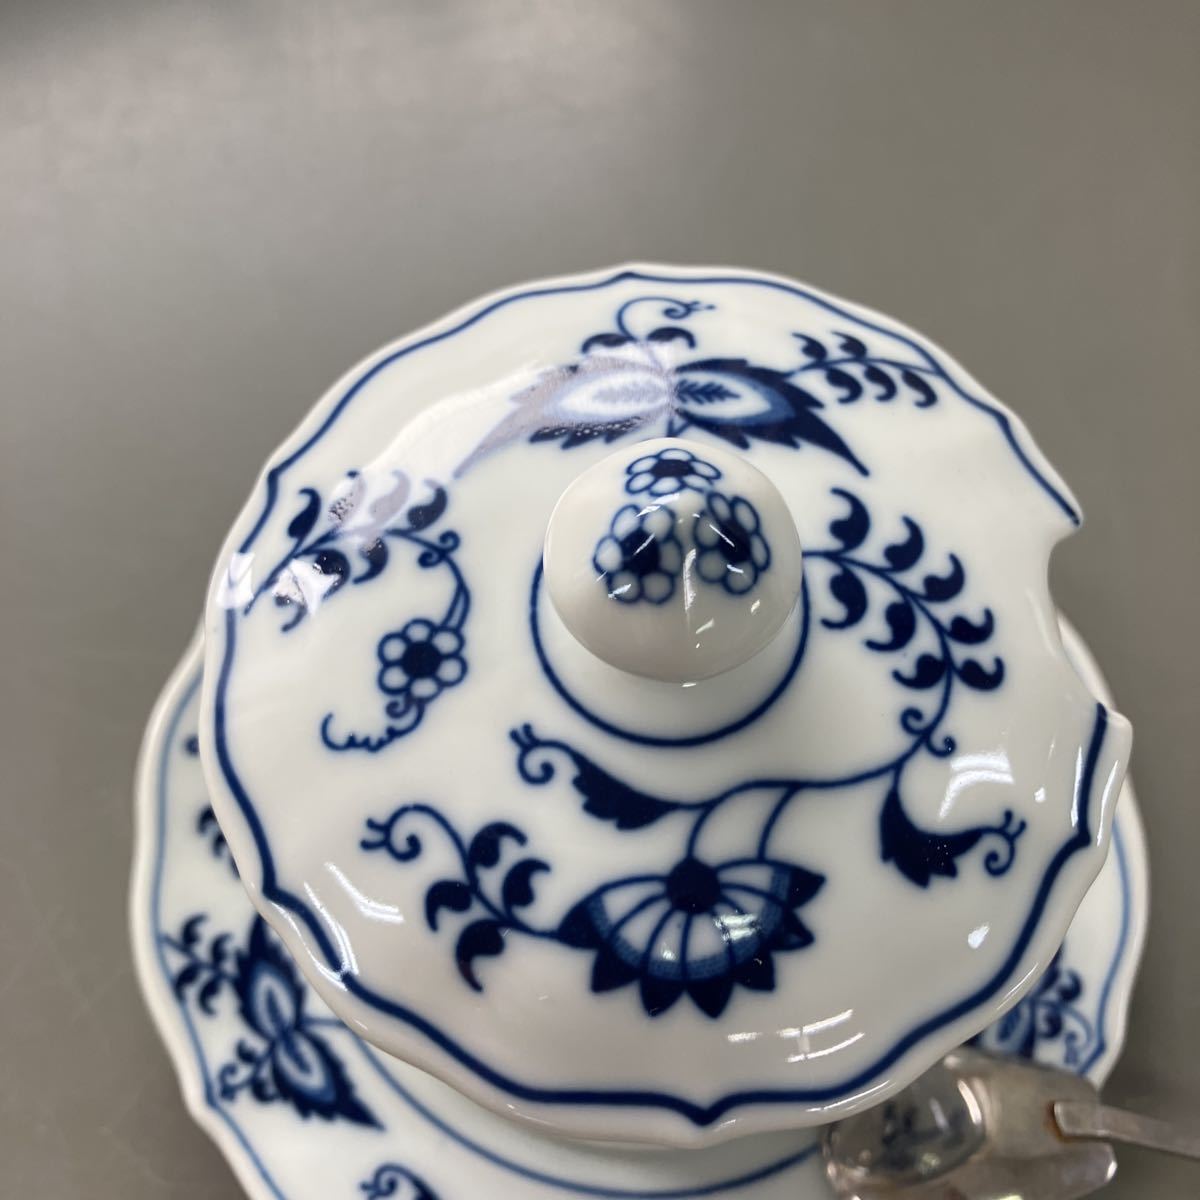 【シュガーポット 陶器 食器】BLUE danube セット売り【B1-2①】0901_画像2